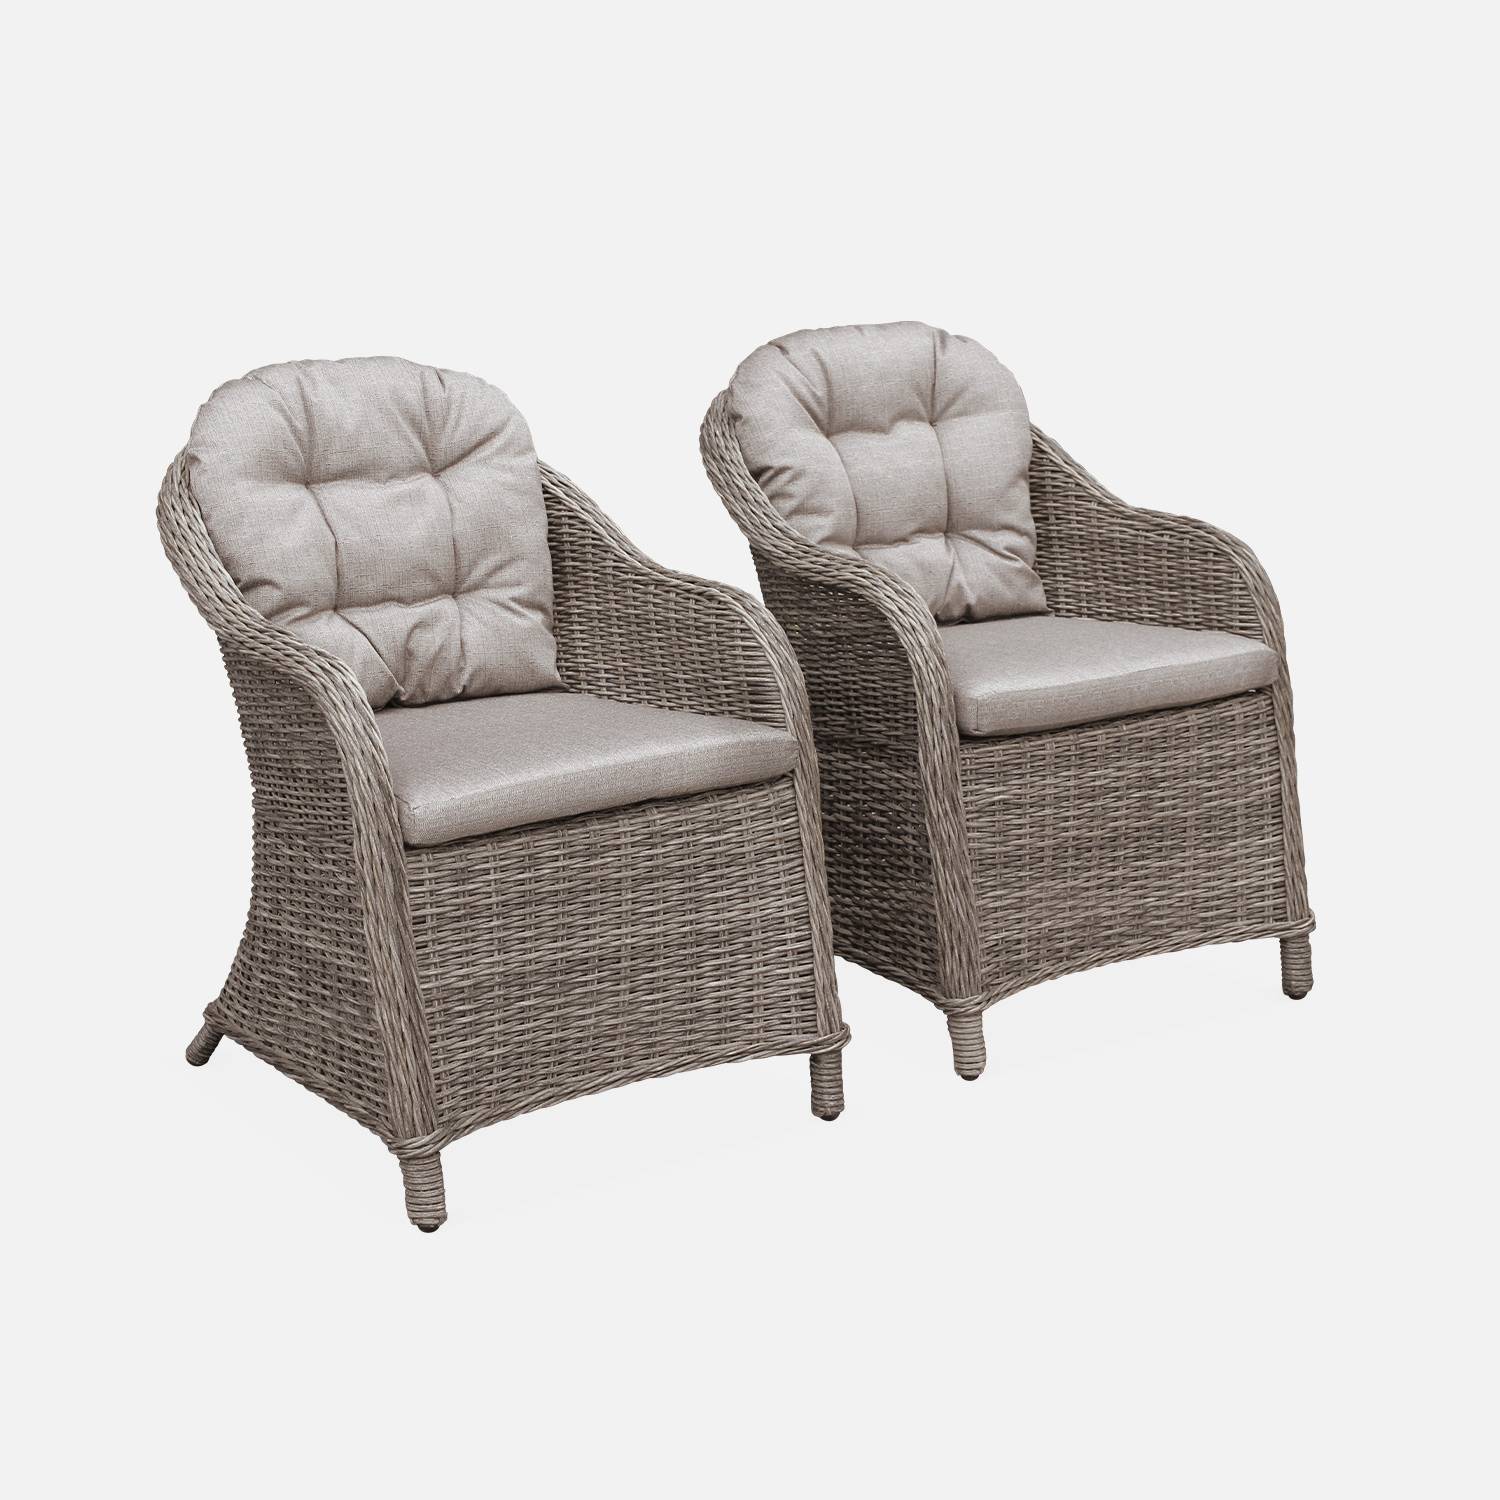 Set mit 2 runden Sesseln aus Kunststoffrattan - Lecco Grau - beigefarbene Kissen, Stühle, Aluminiumgestell Photo1